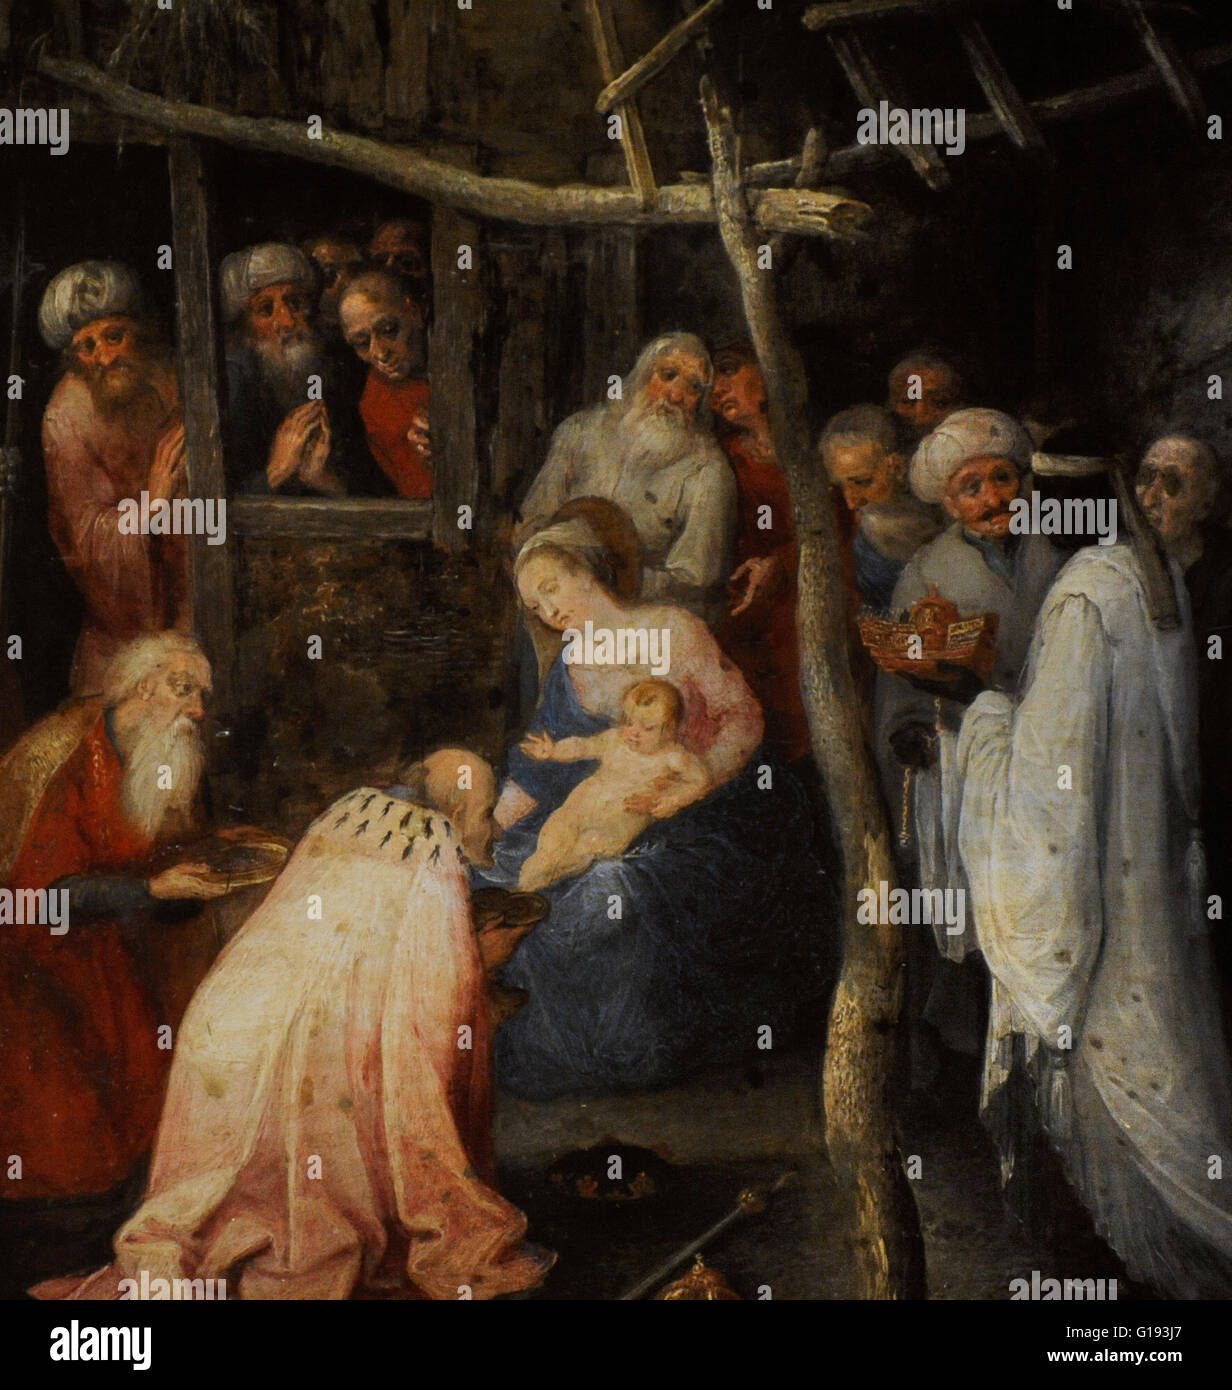 Jan Brueghel der ältere. (1568 - 1625). flämischer Maler. Die Anbetung der Heiligen drei Könige. 1598-1600. Öl auf Kupfer. Barocke. Detail. Die Eremitage. Sankt Petersburg. Russland. Stockfoto